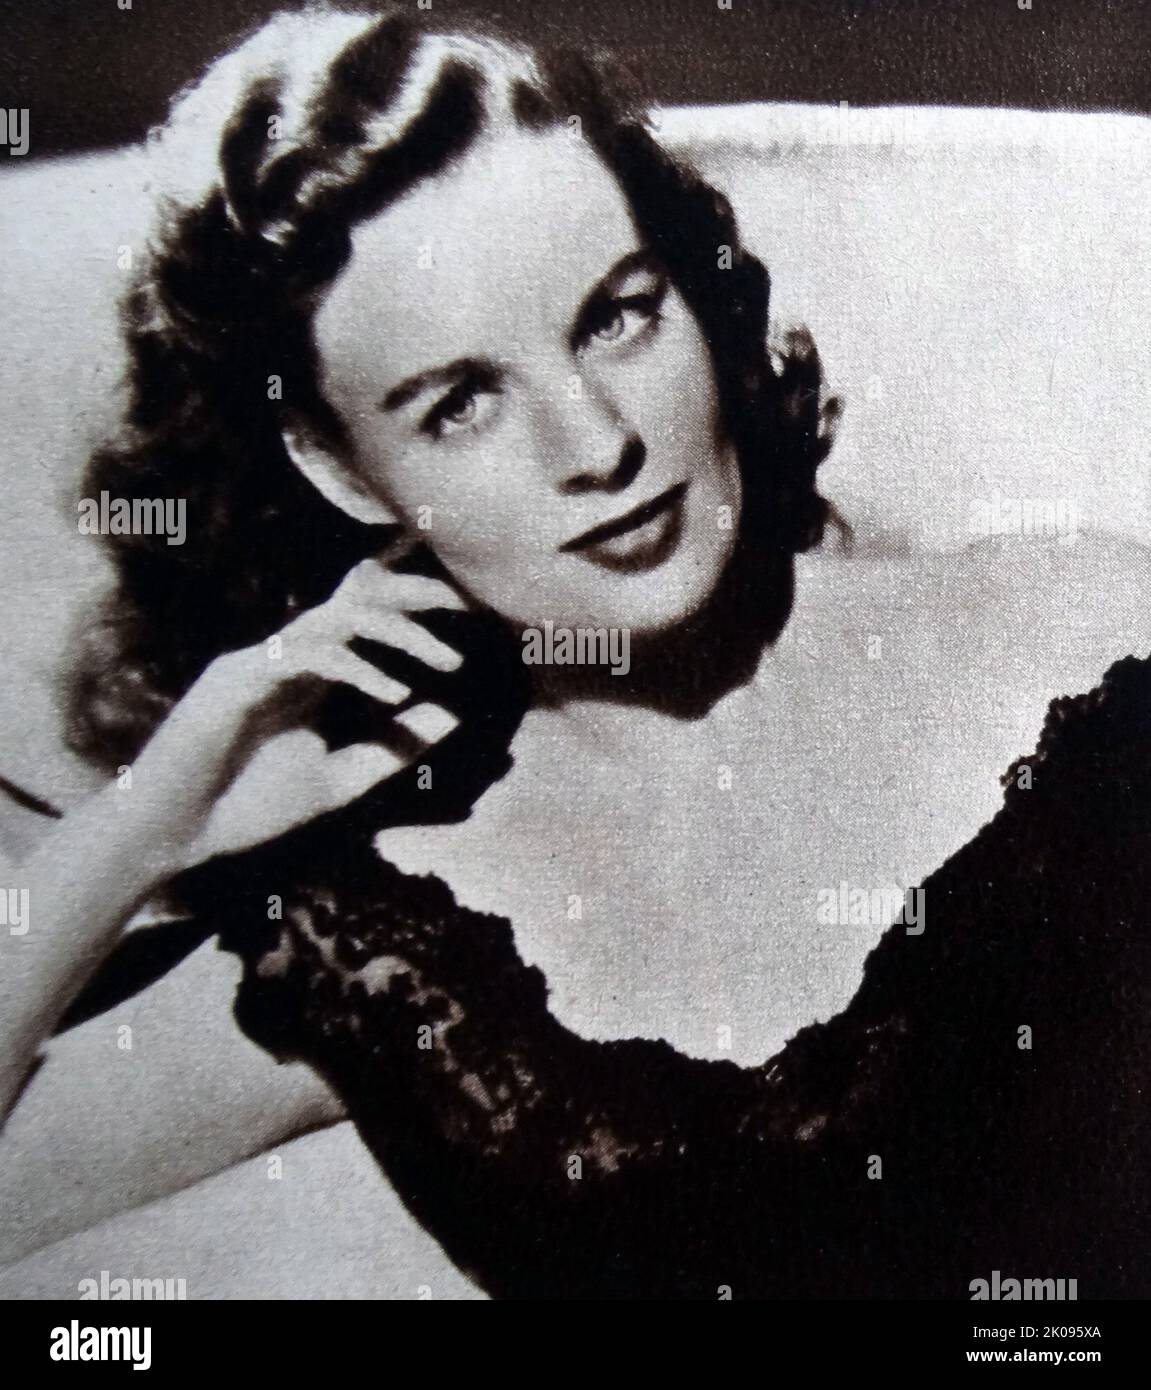 L'actrice Helena carter (née Helen Rickerts, 24 août 1923 - 11 janvier 2000) était une actrice américaine de cinéma en 1940s et 1950s. Banque D'Images